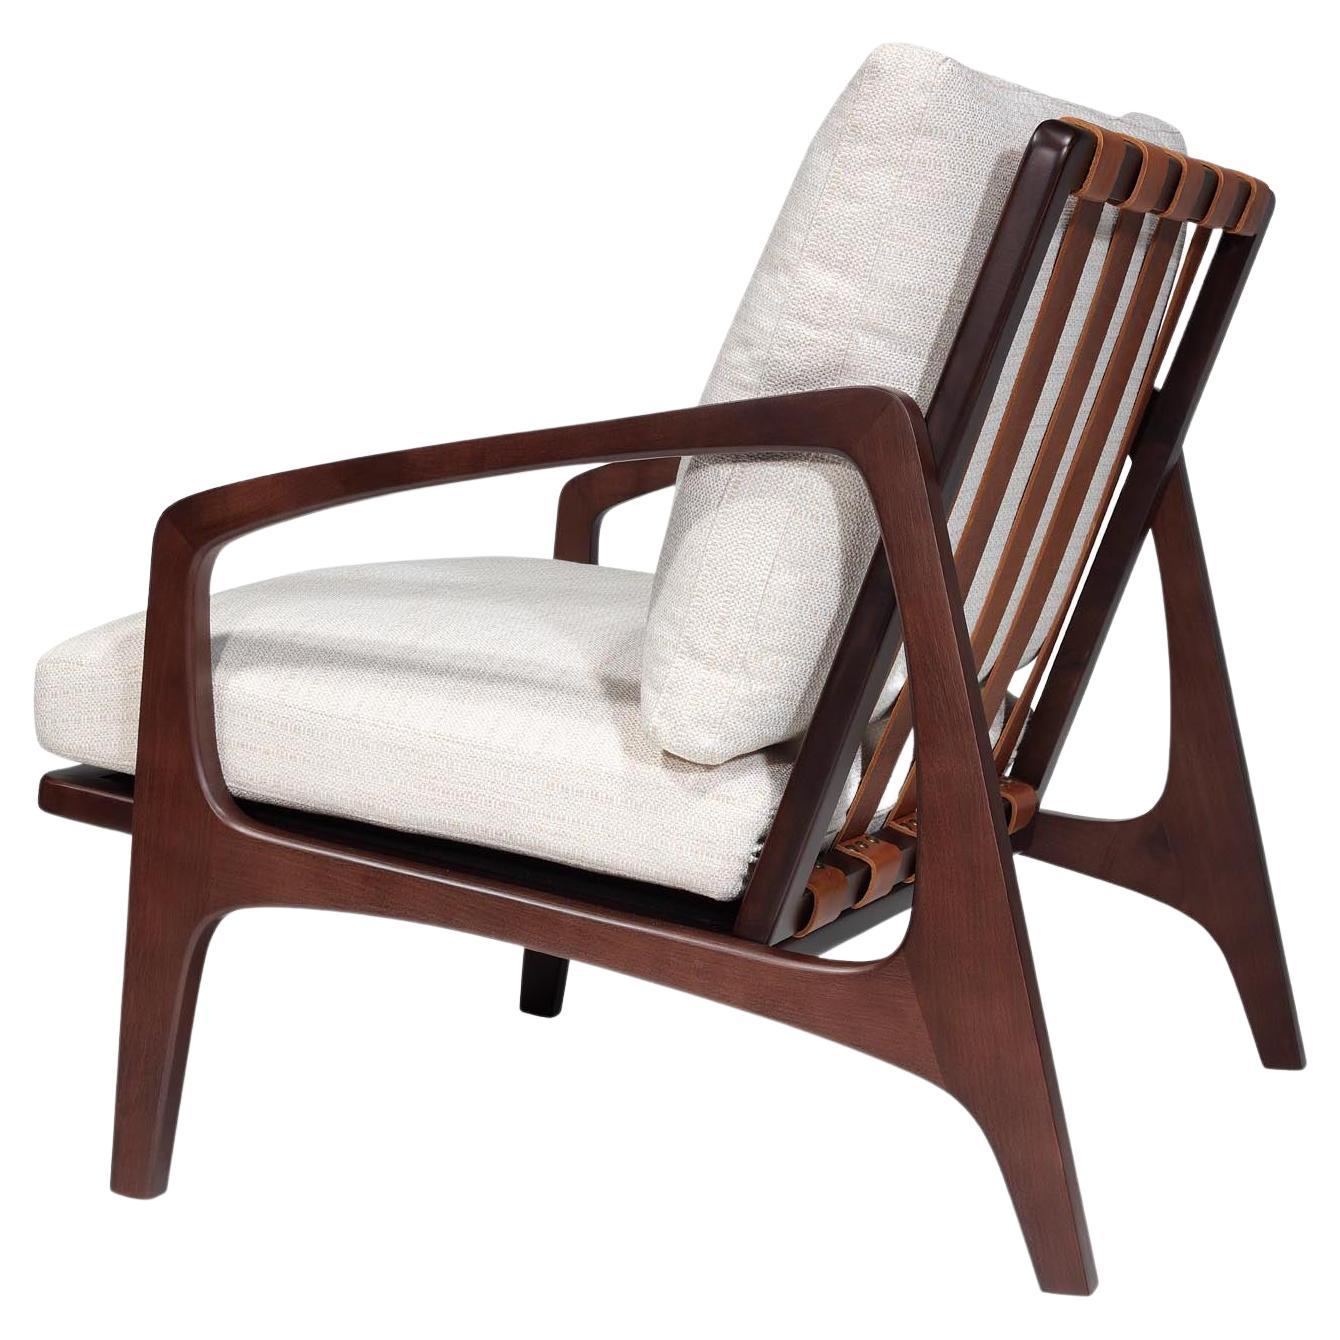 William Lounge Chair, Nussbaum